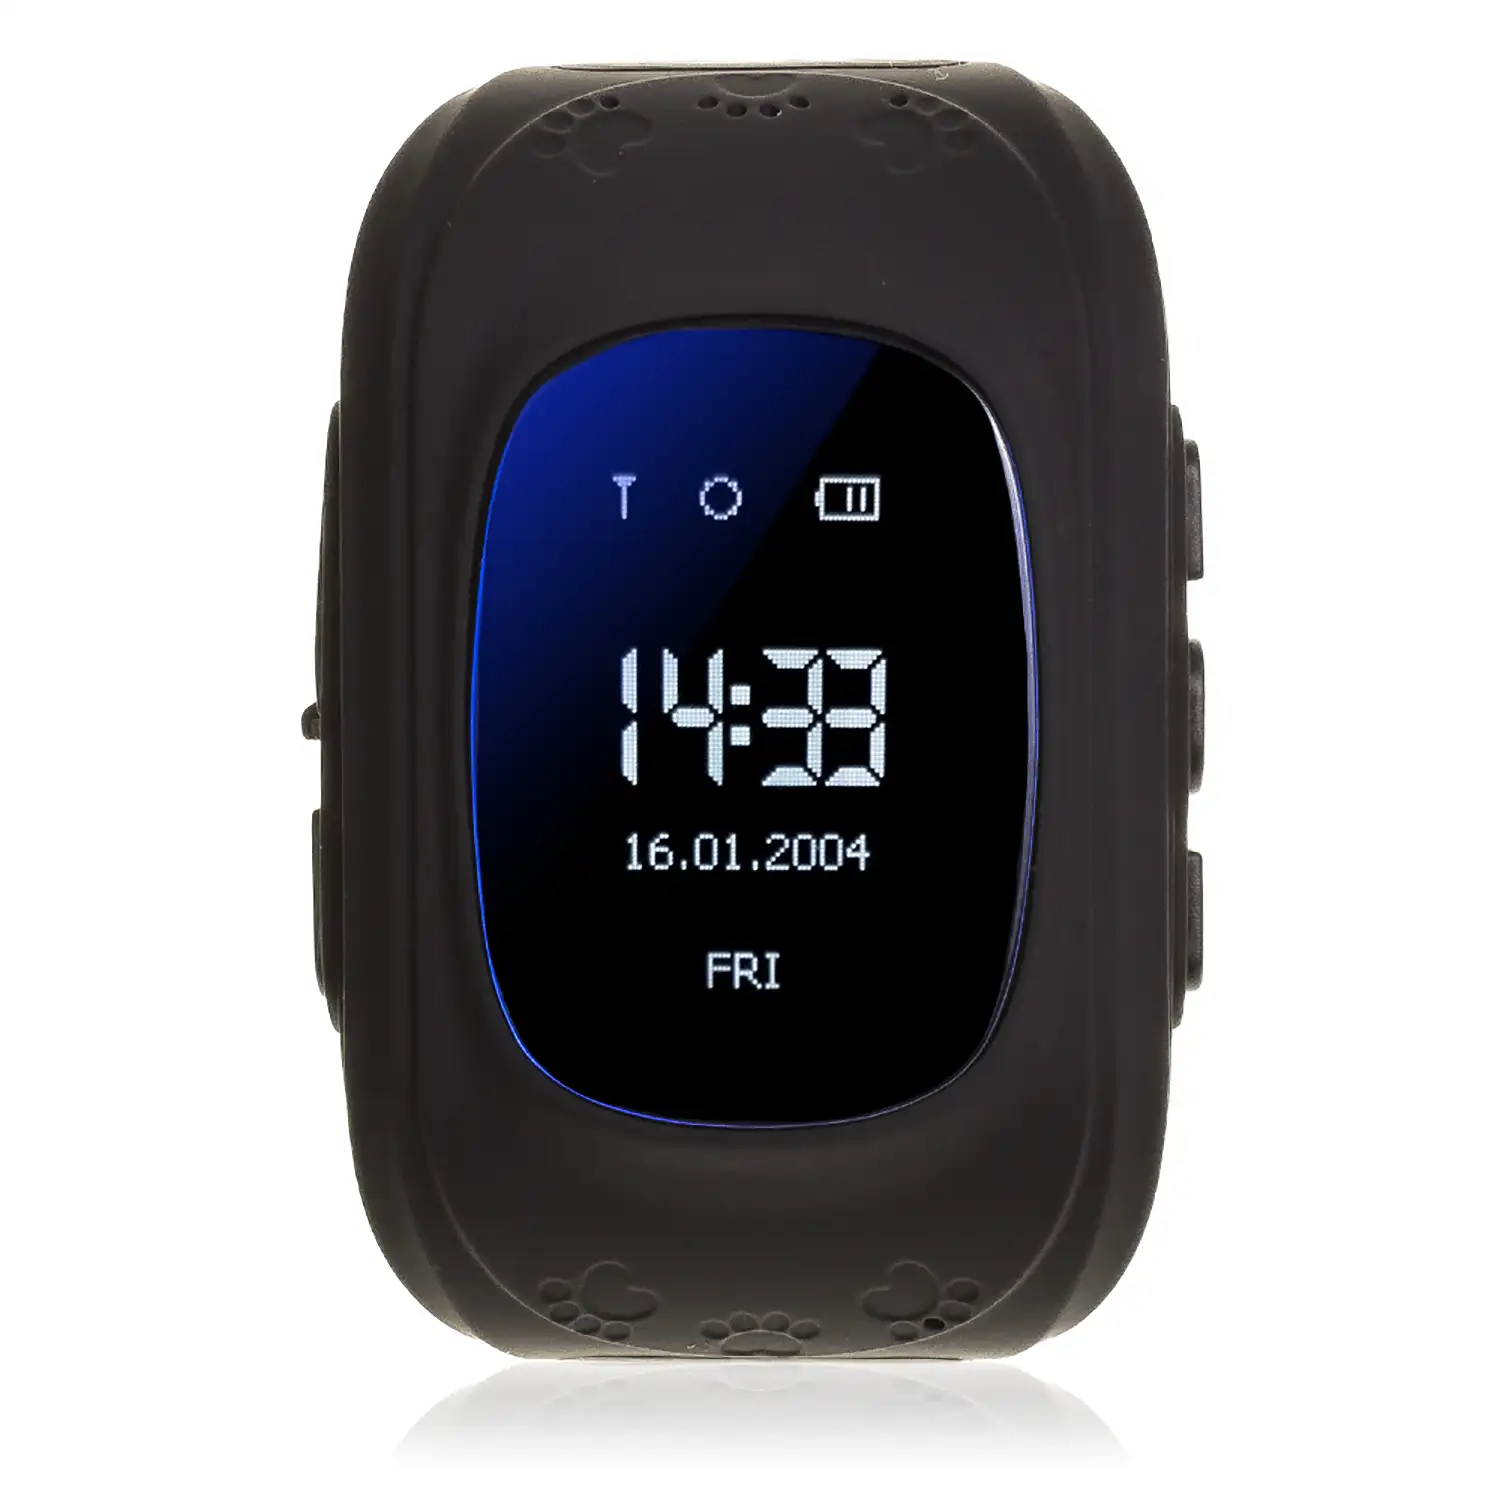 Smartwatch GPS Q50 especial para niños, con función de rastreo, llamadas SOS y recepción de llamada